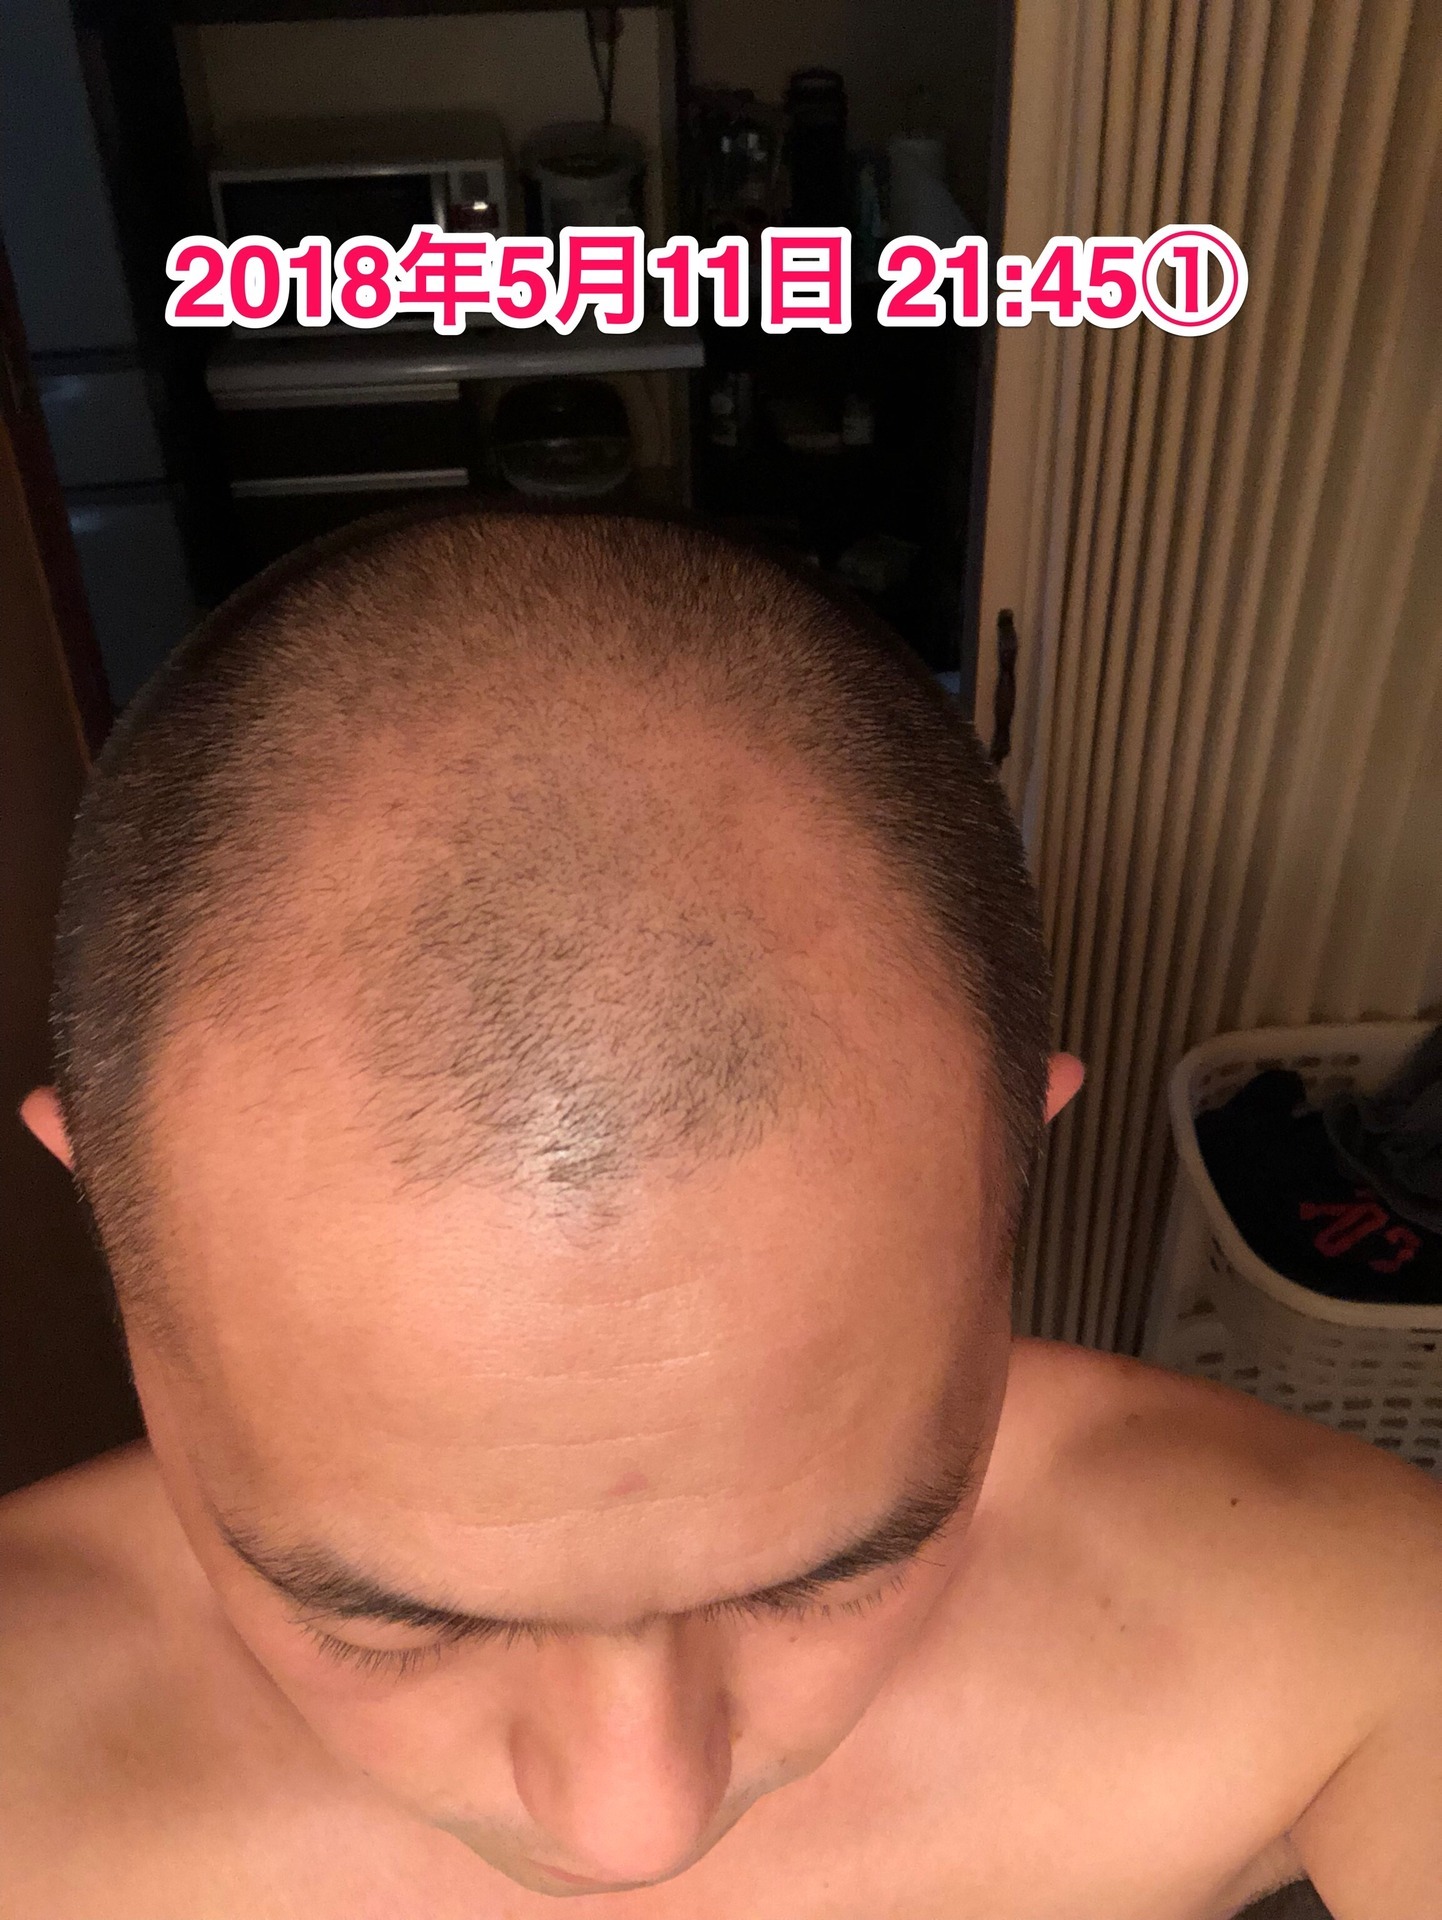 40代オヤジの頭髪を経過観察するブログ 18年5月11日 4本目突入から10日